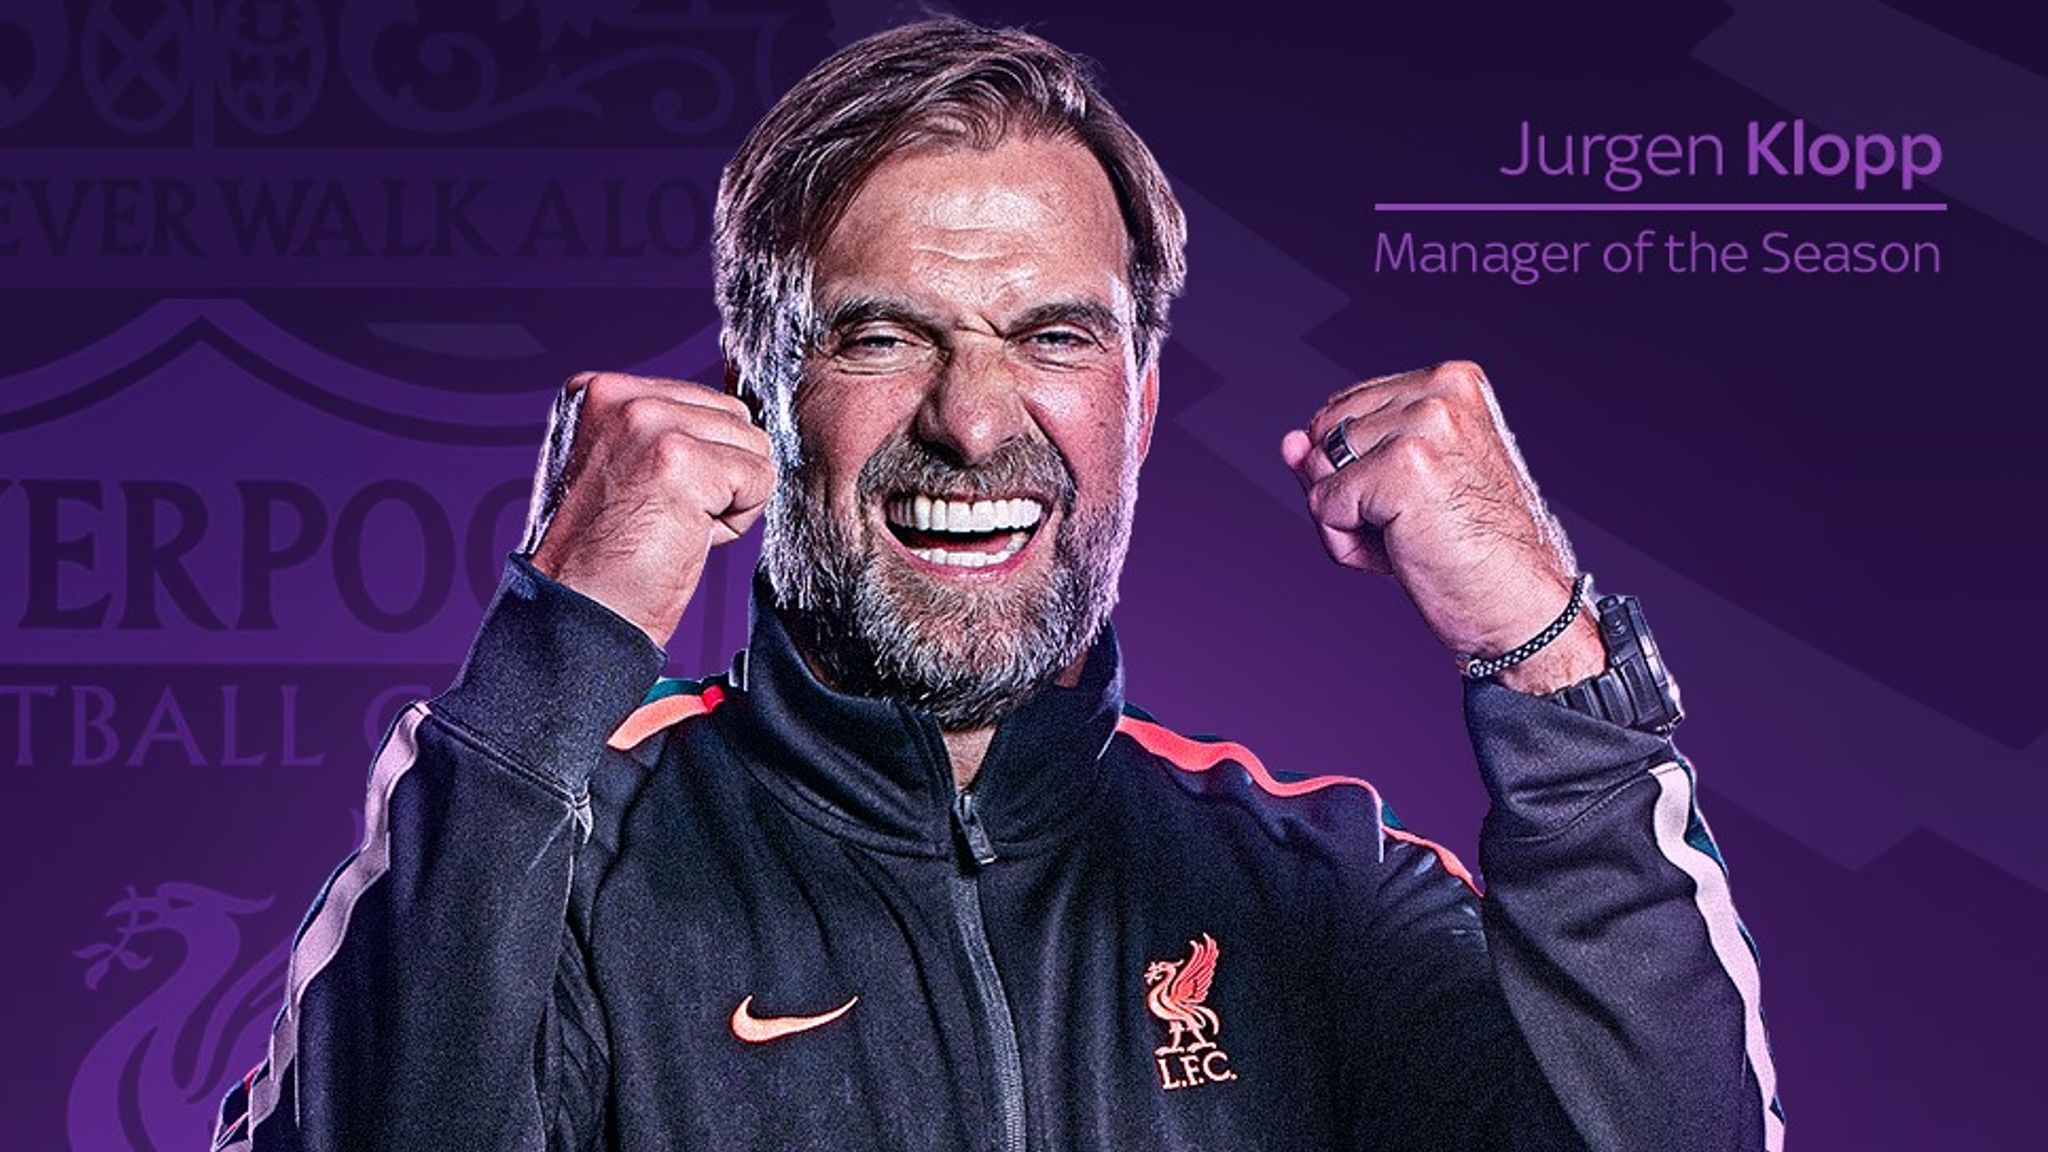 HLV Jurgen Klopp của Liverpool giành HLV của mùa giải 2021/2022